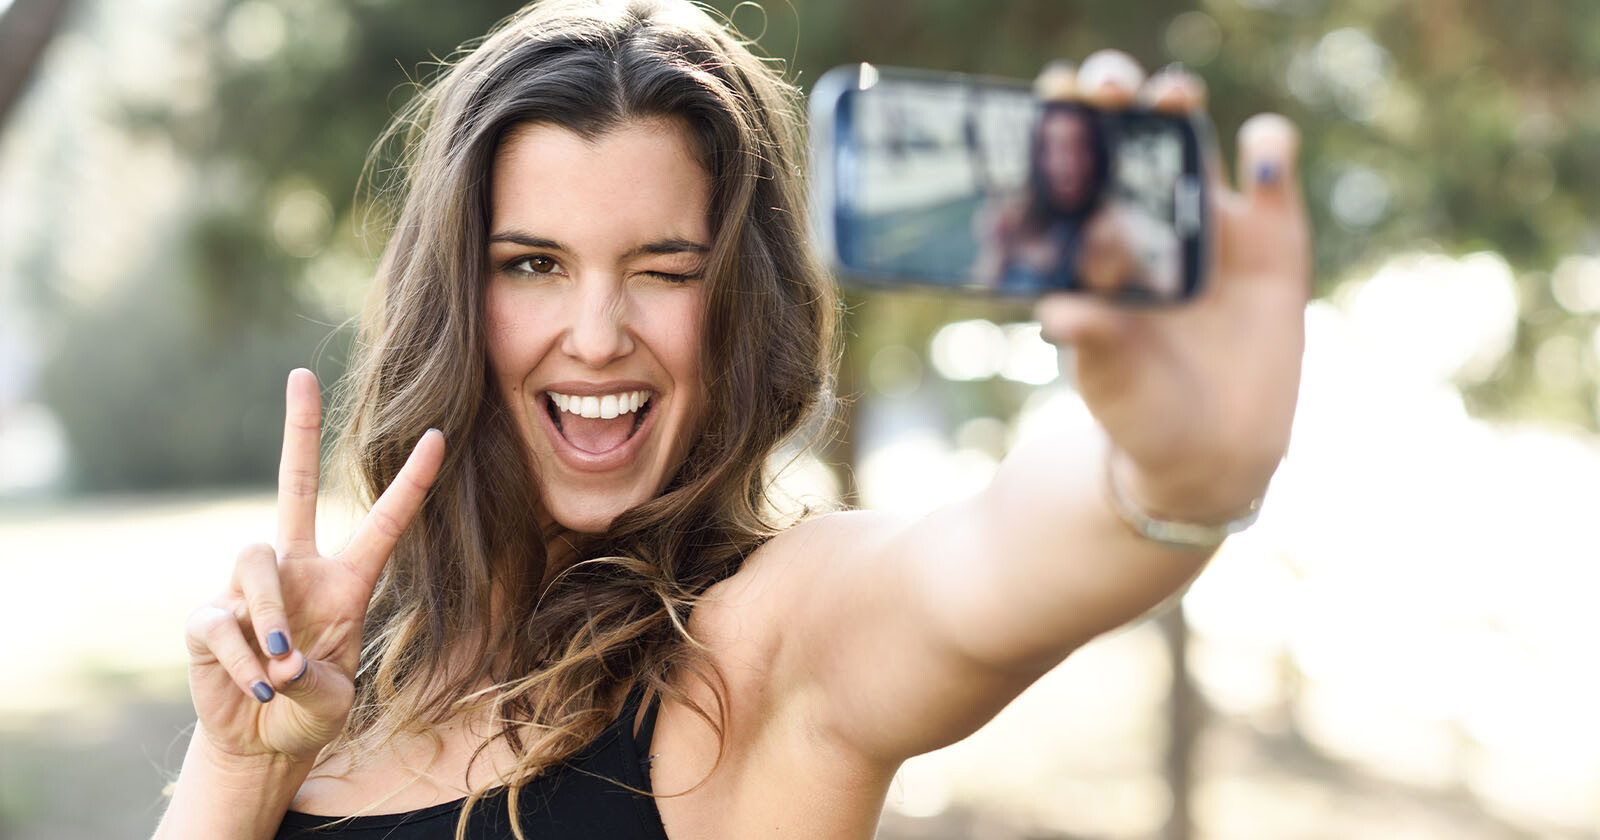  scientists explain why people love take selfies 